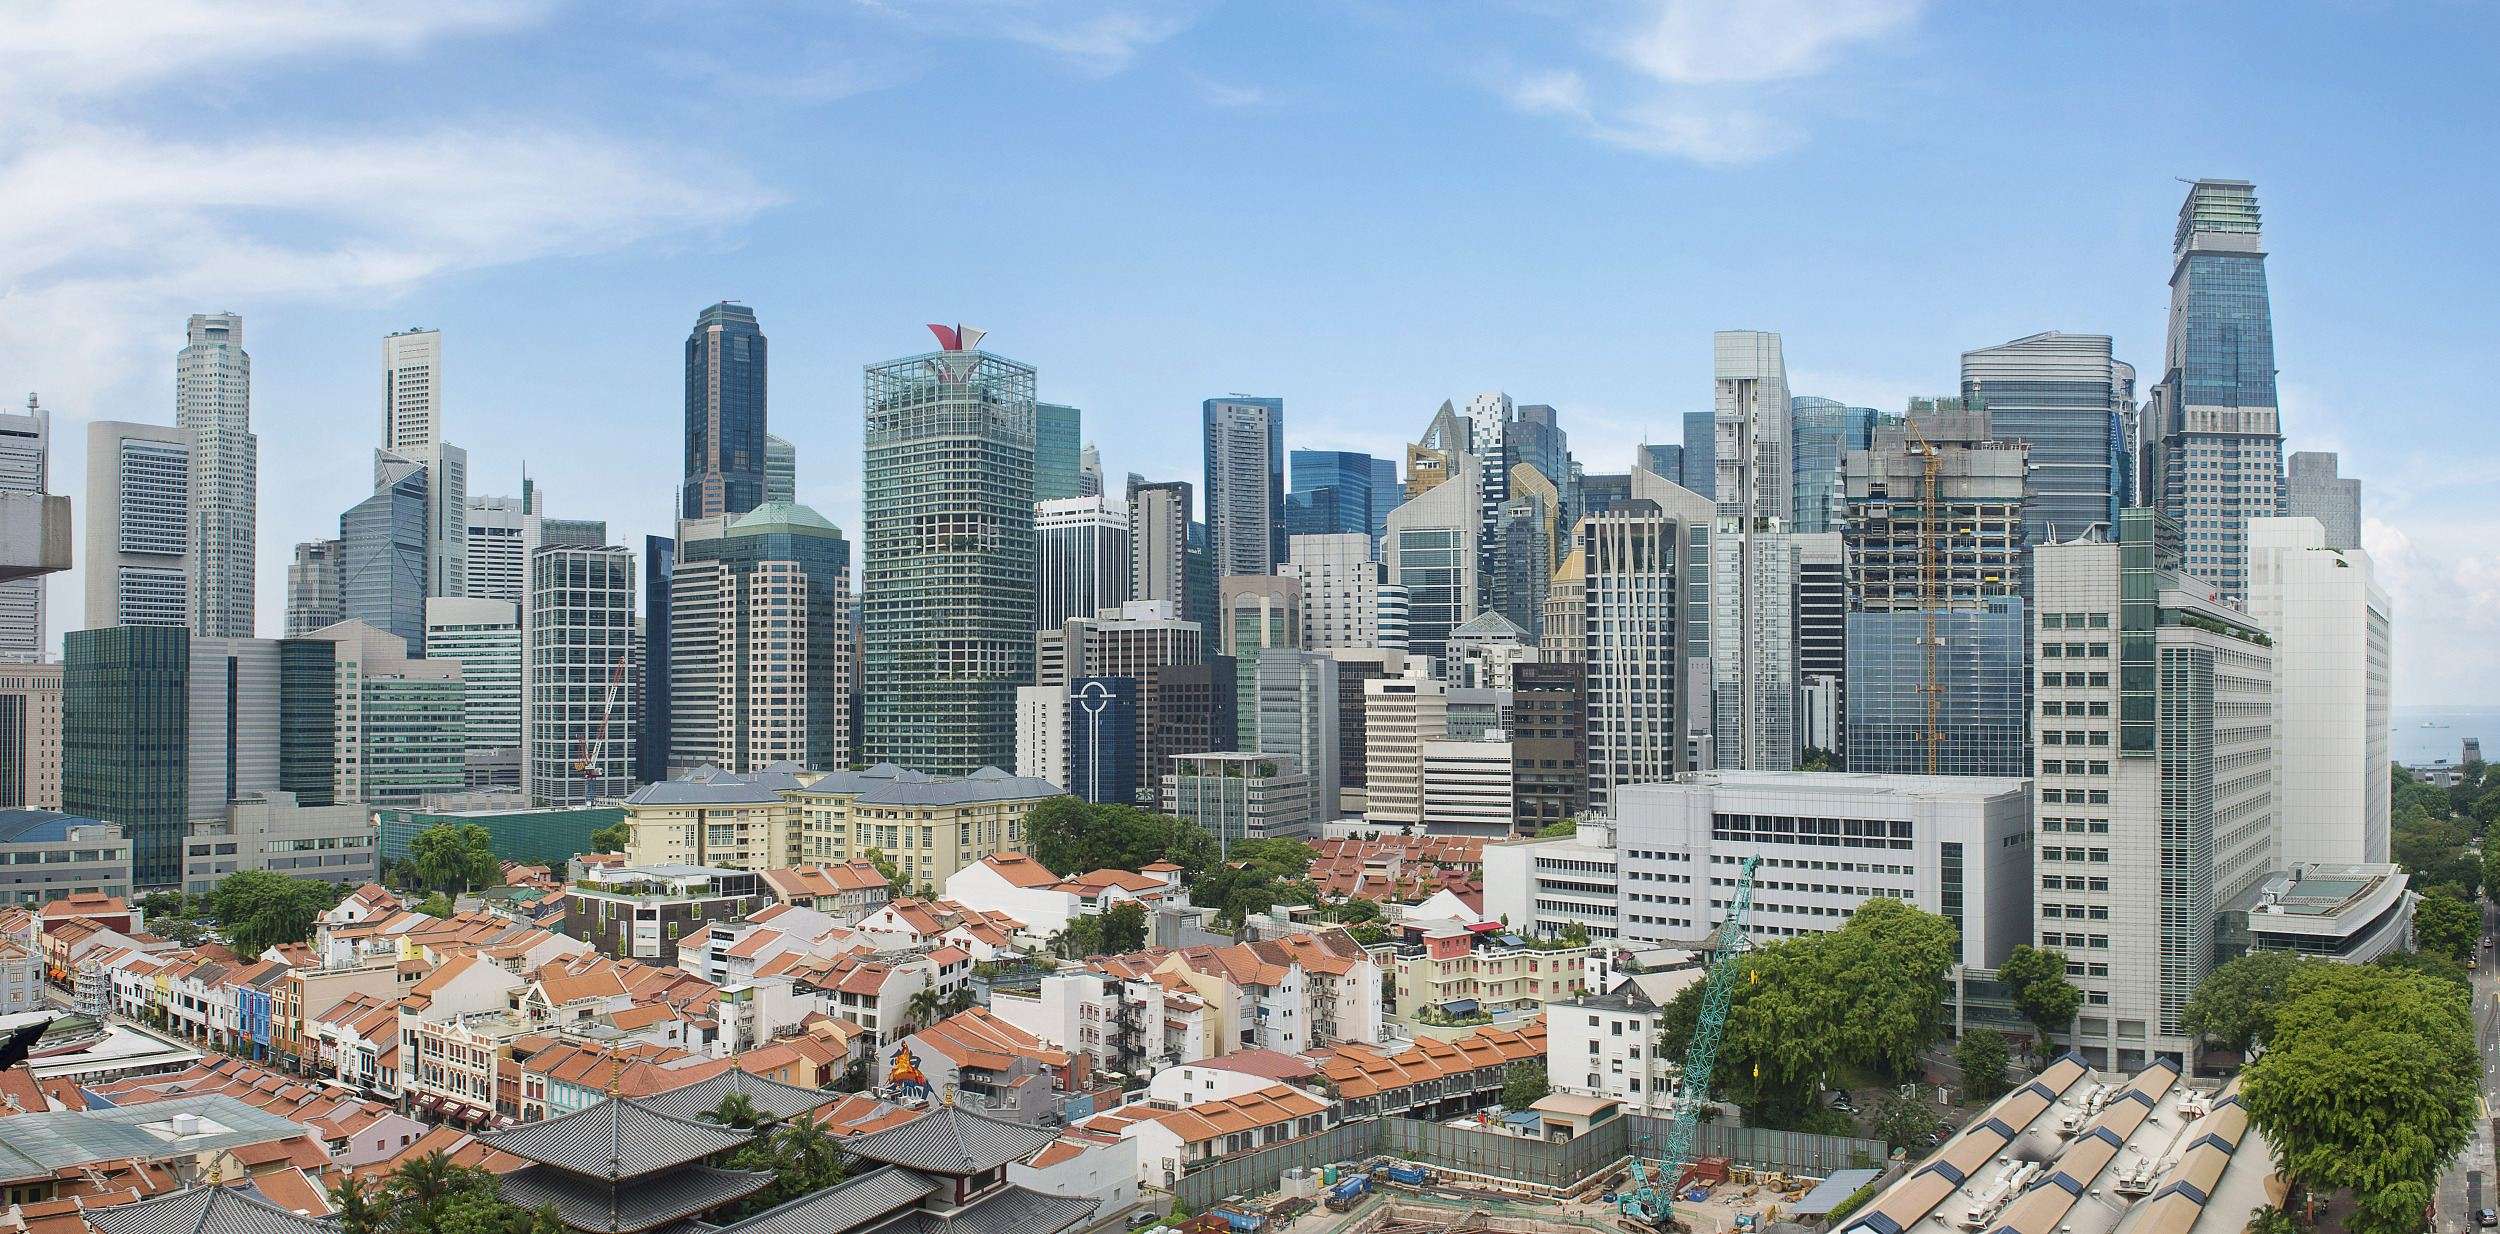 เที่ยวสิงคโปร์ ไม่ต้องกักตัว! กฎการเข้าเมืองใหม่ + ที่เที่ยว 2565 -Trip.Com